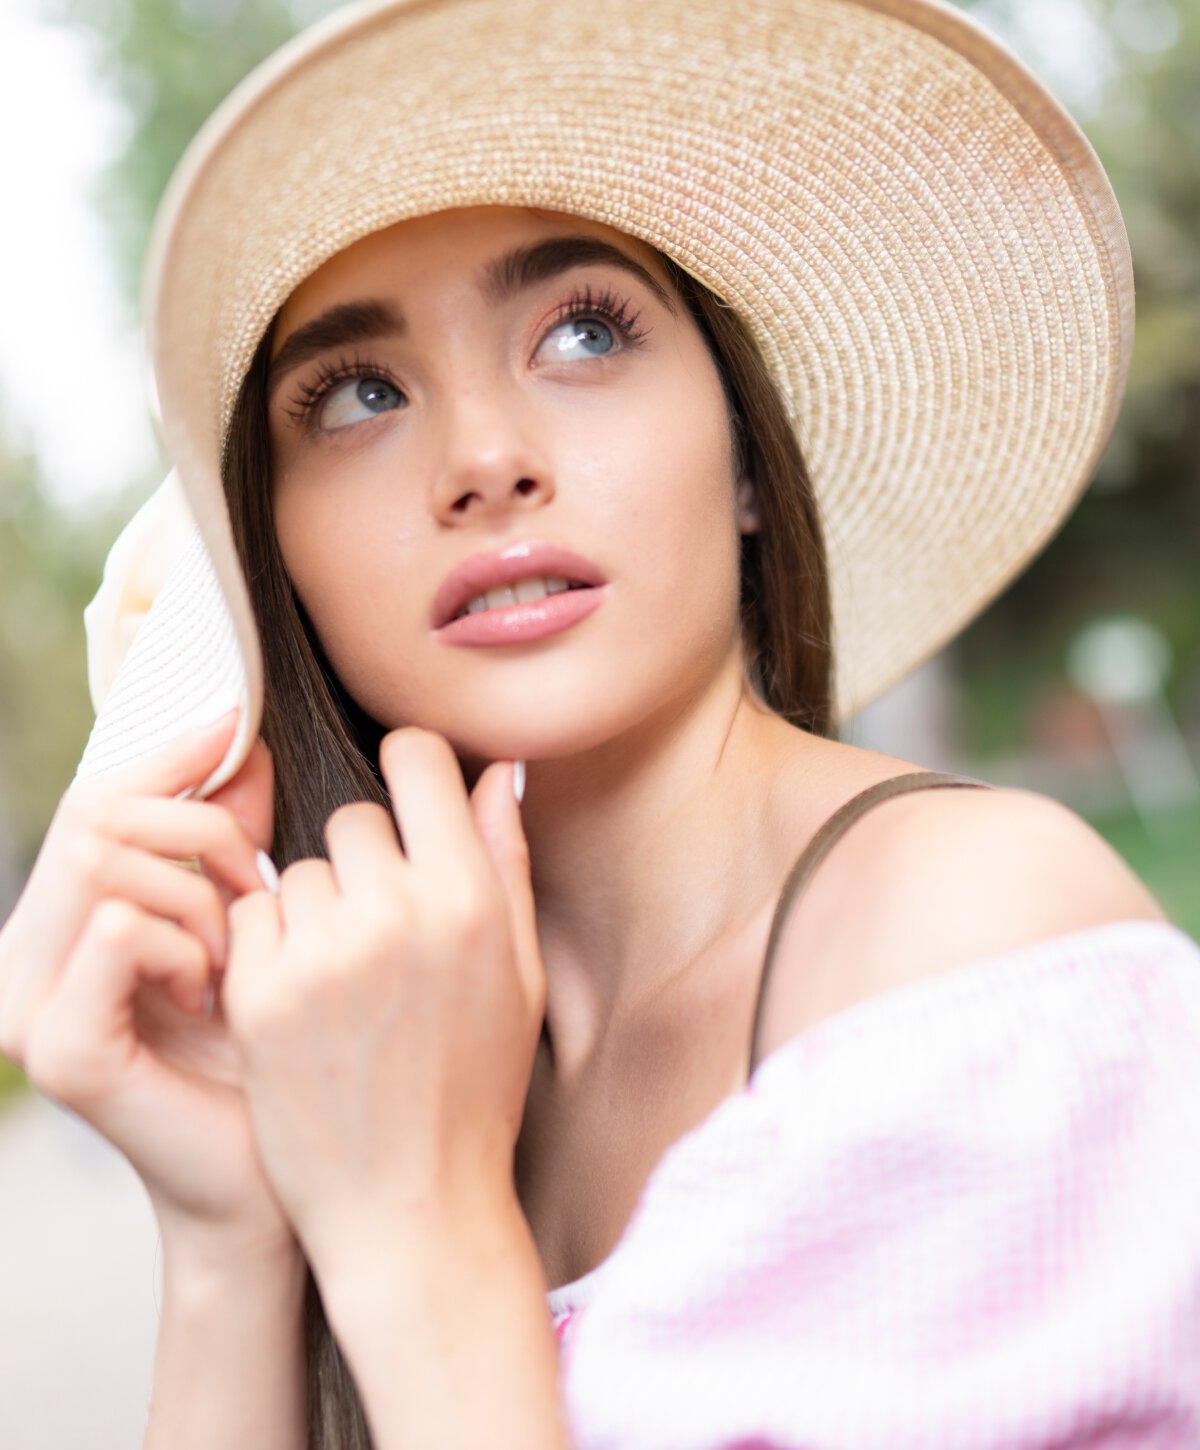 Carolina medspa model with tan hat